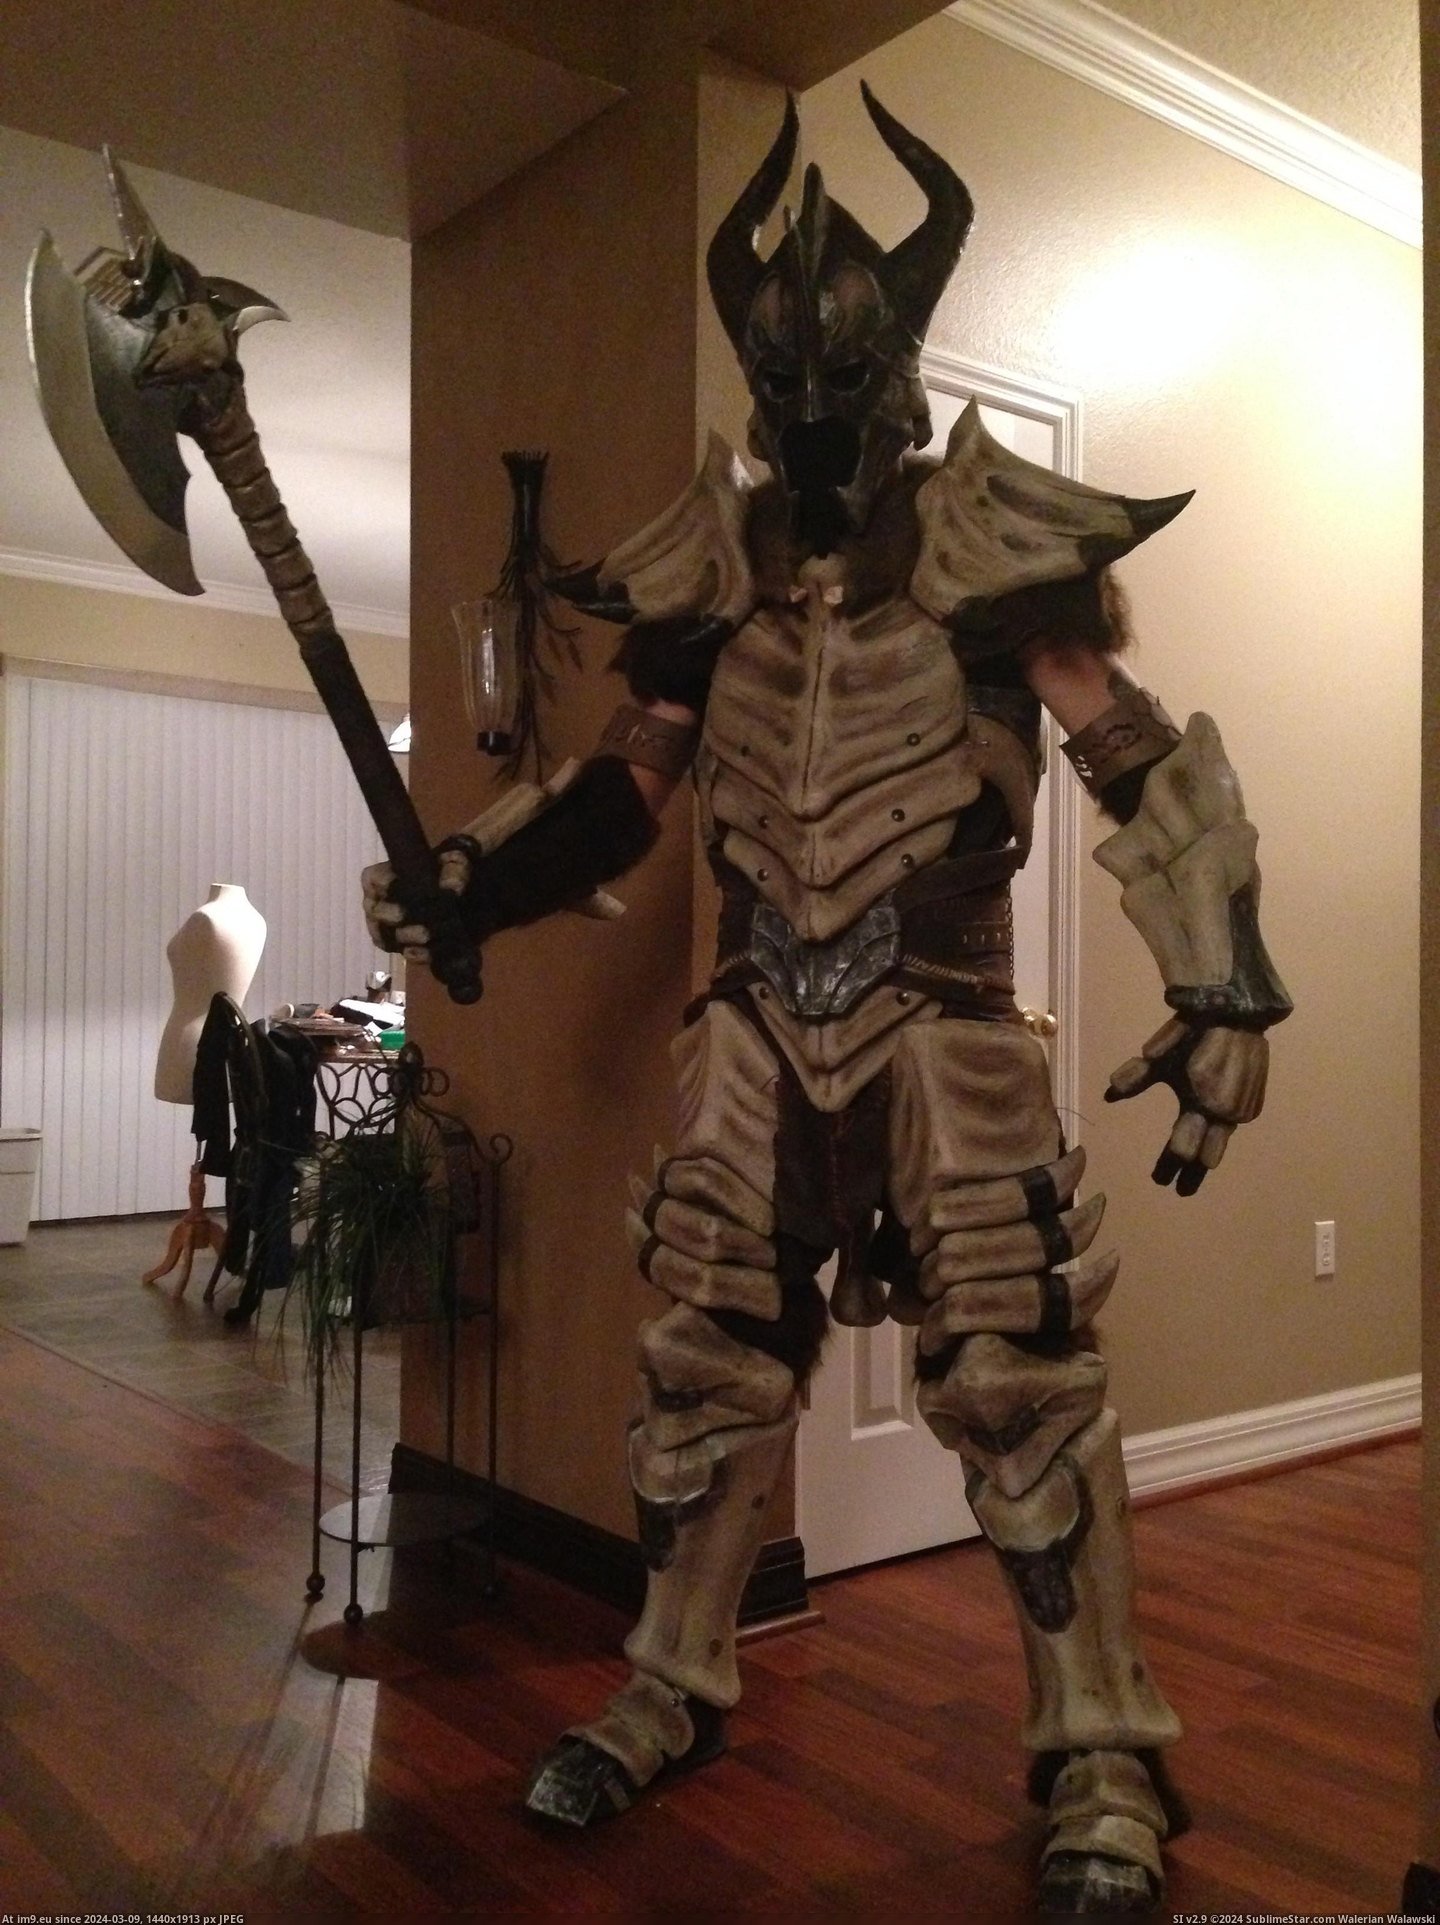 #Gaming #How #Dragonbone #Skyrim #Armor [Gaming] [Self] Skyrim Dragonbone Armor - How I made it 17 Pic. (Bild von album My r/GAMING favs))